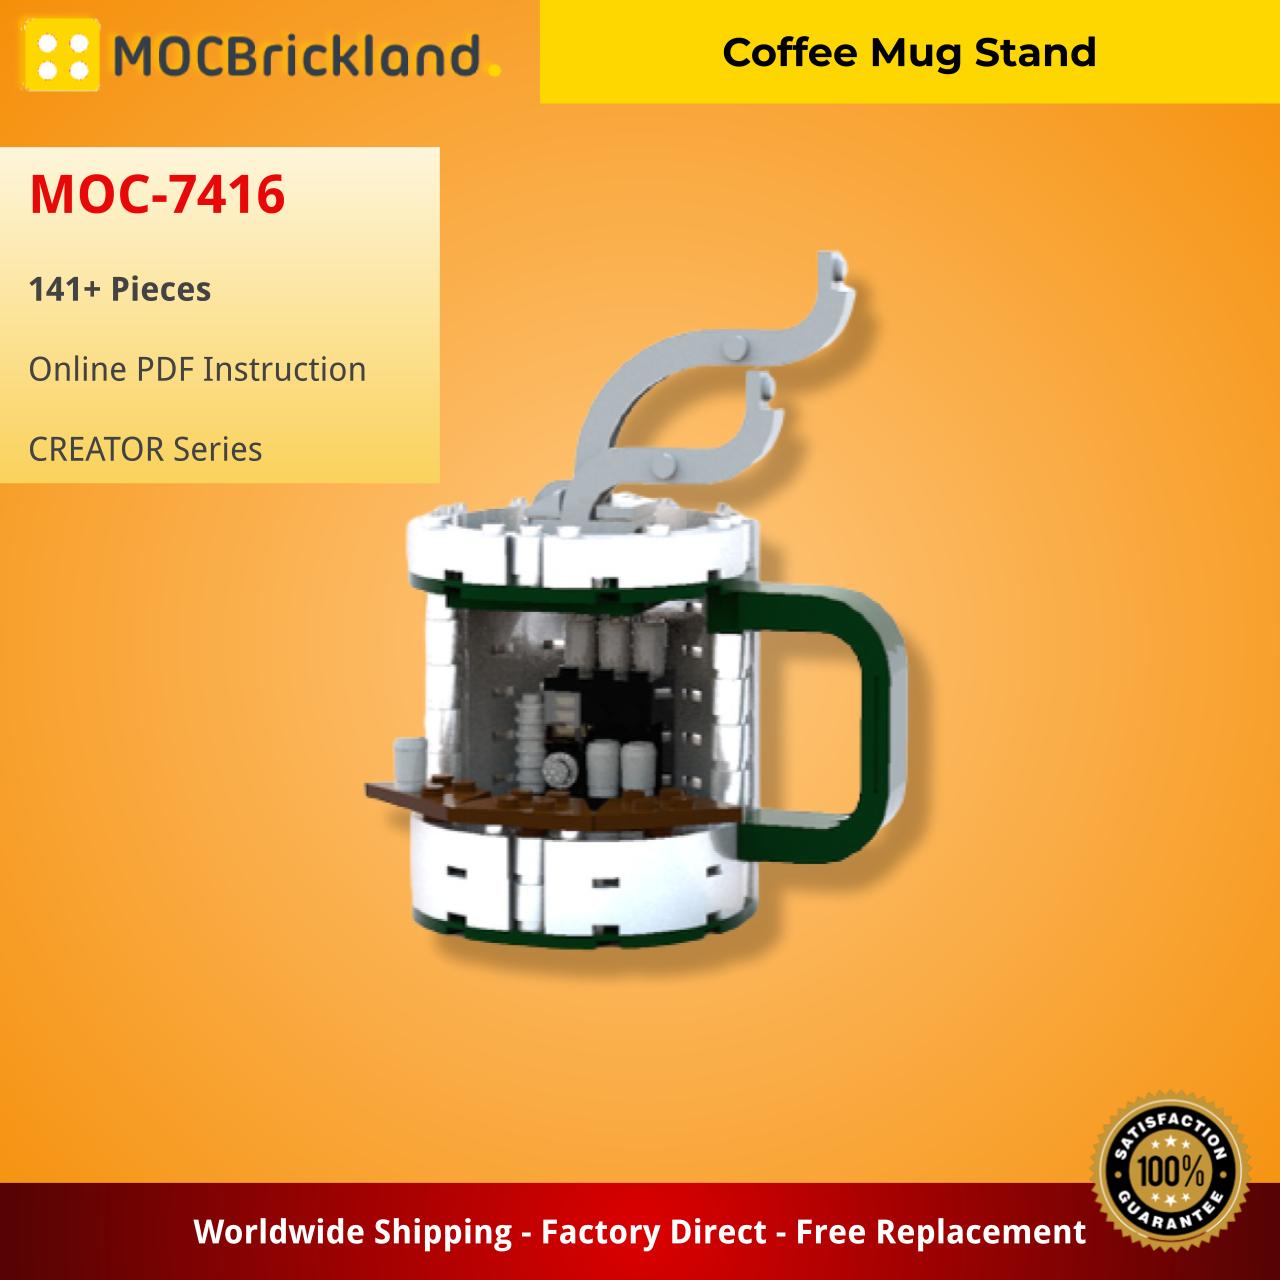 MOCBRICKLAND MOC-7416 Coffee Mug Stand